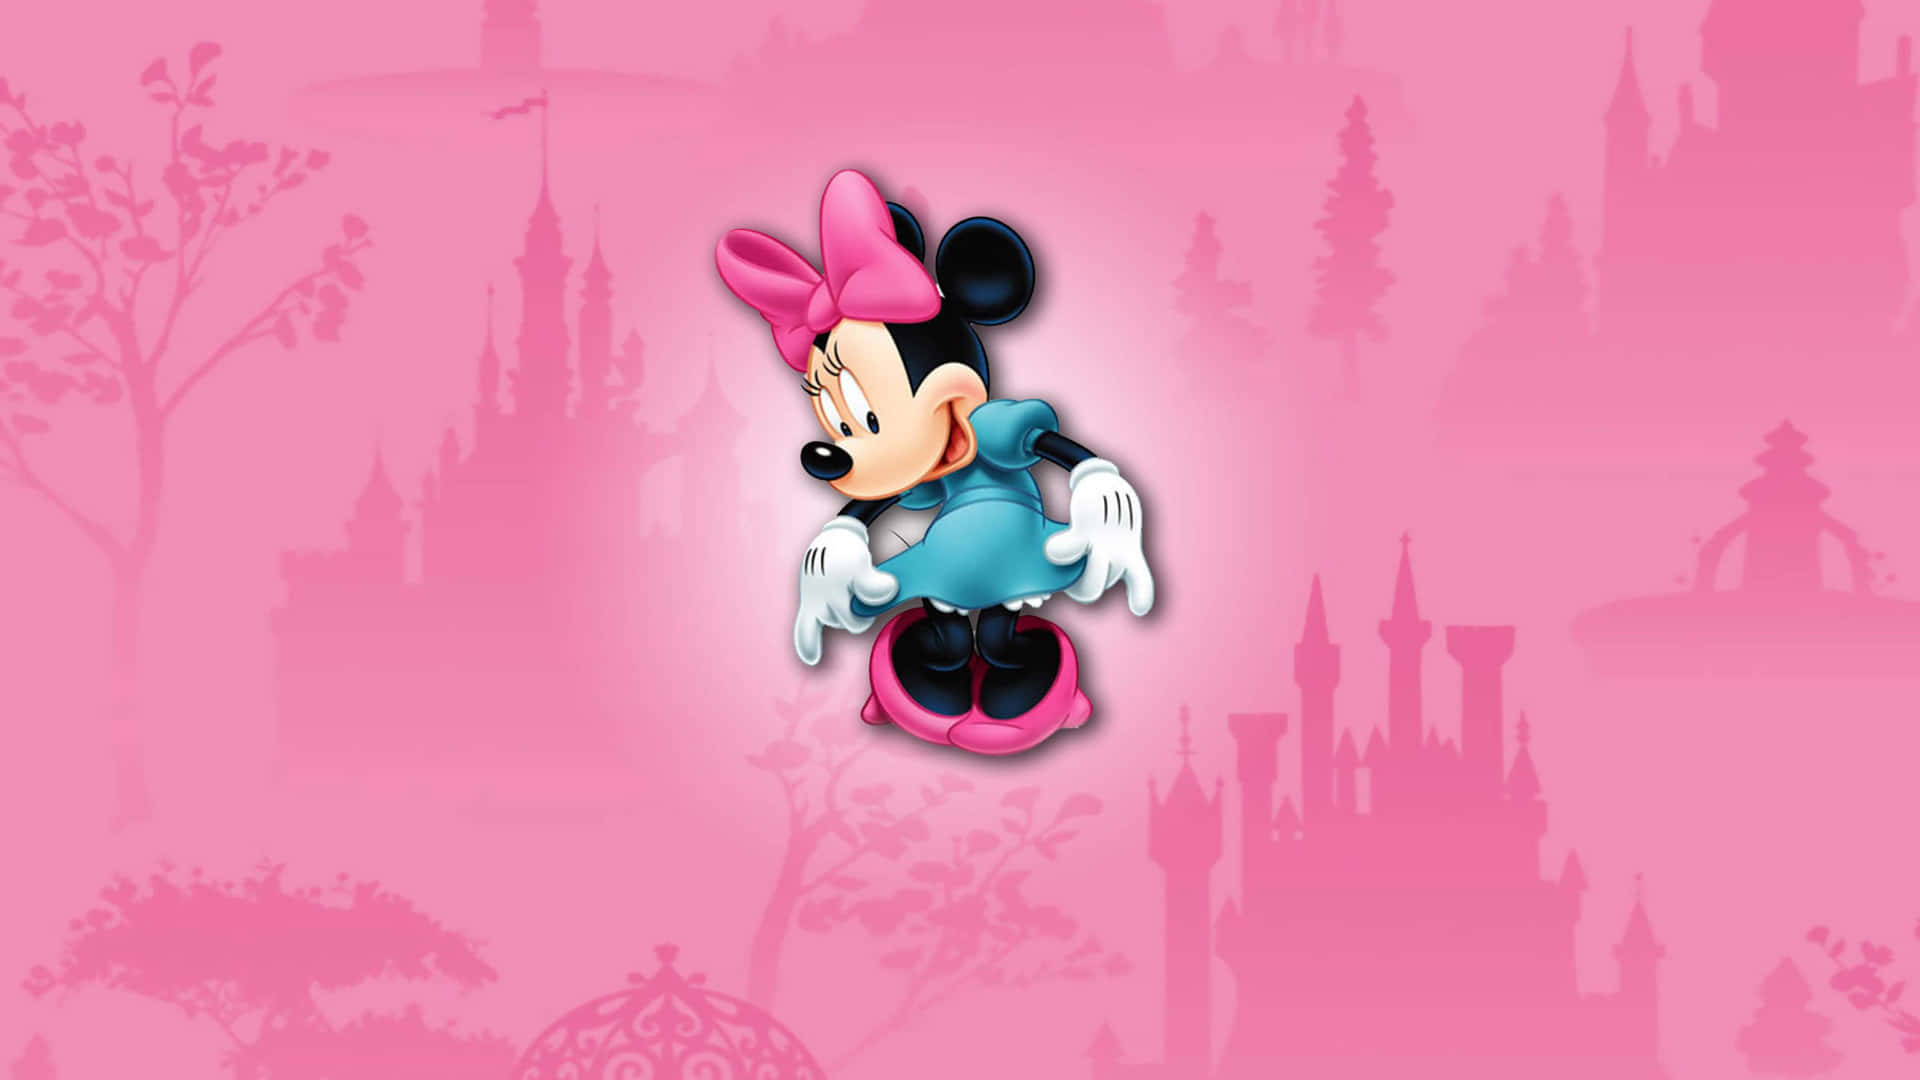 L'iconicaminnie Mouse Vestita Con Un Abito Rosa Tenue. Sfondo